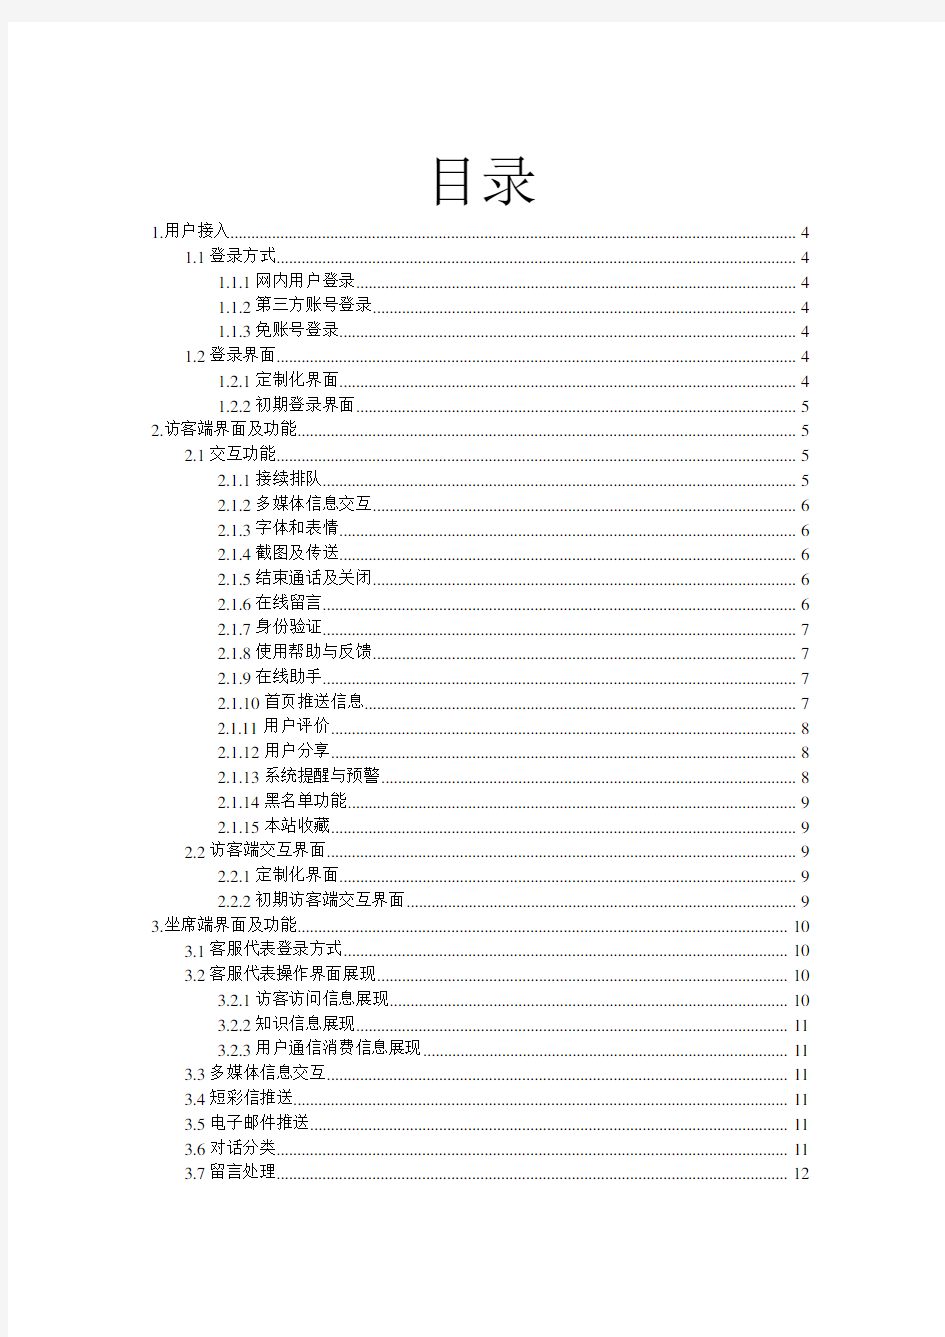 中国联通在线客服系统需求说明书V1.0(613版)